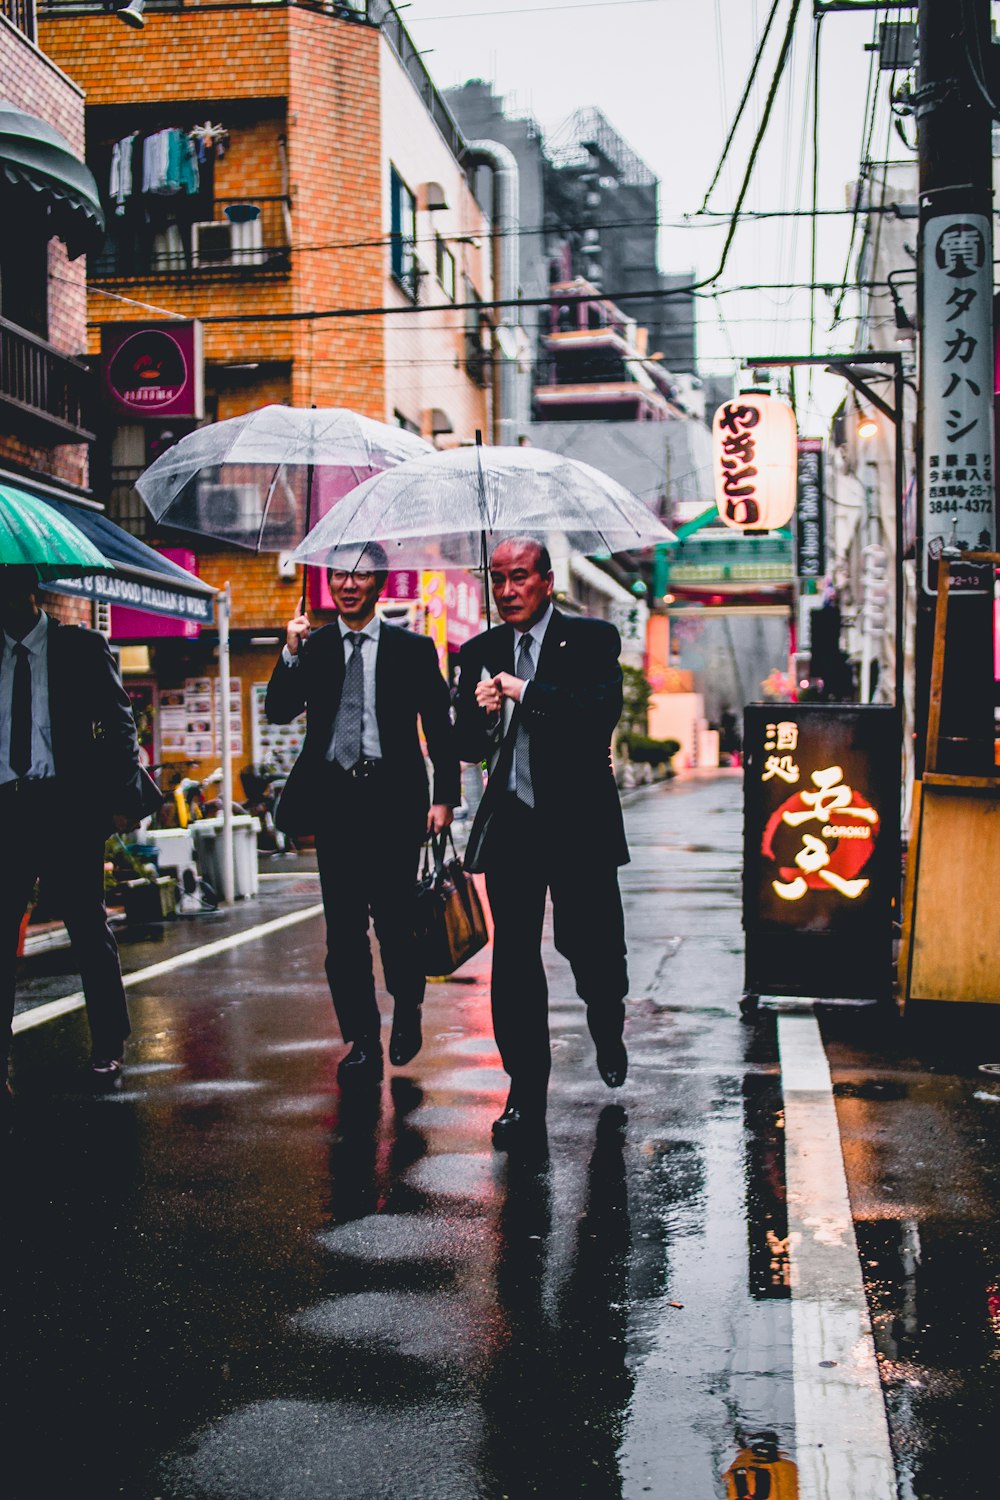 검은 양복을 입은 두 남자가 투명한 우산을 들고 거리를 걷고 있다